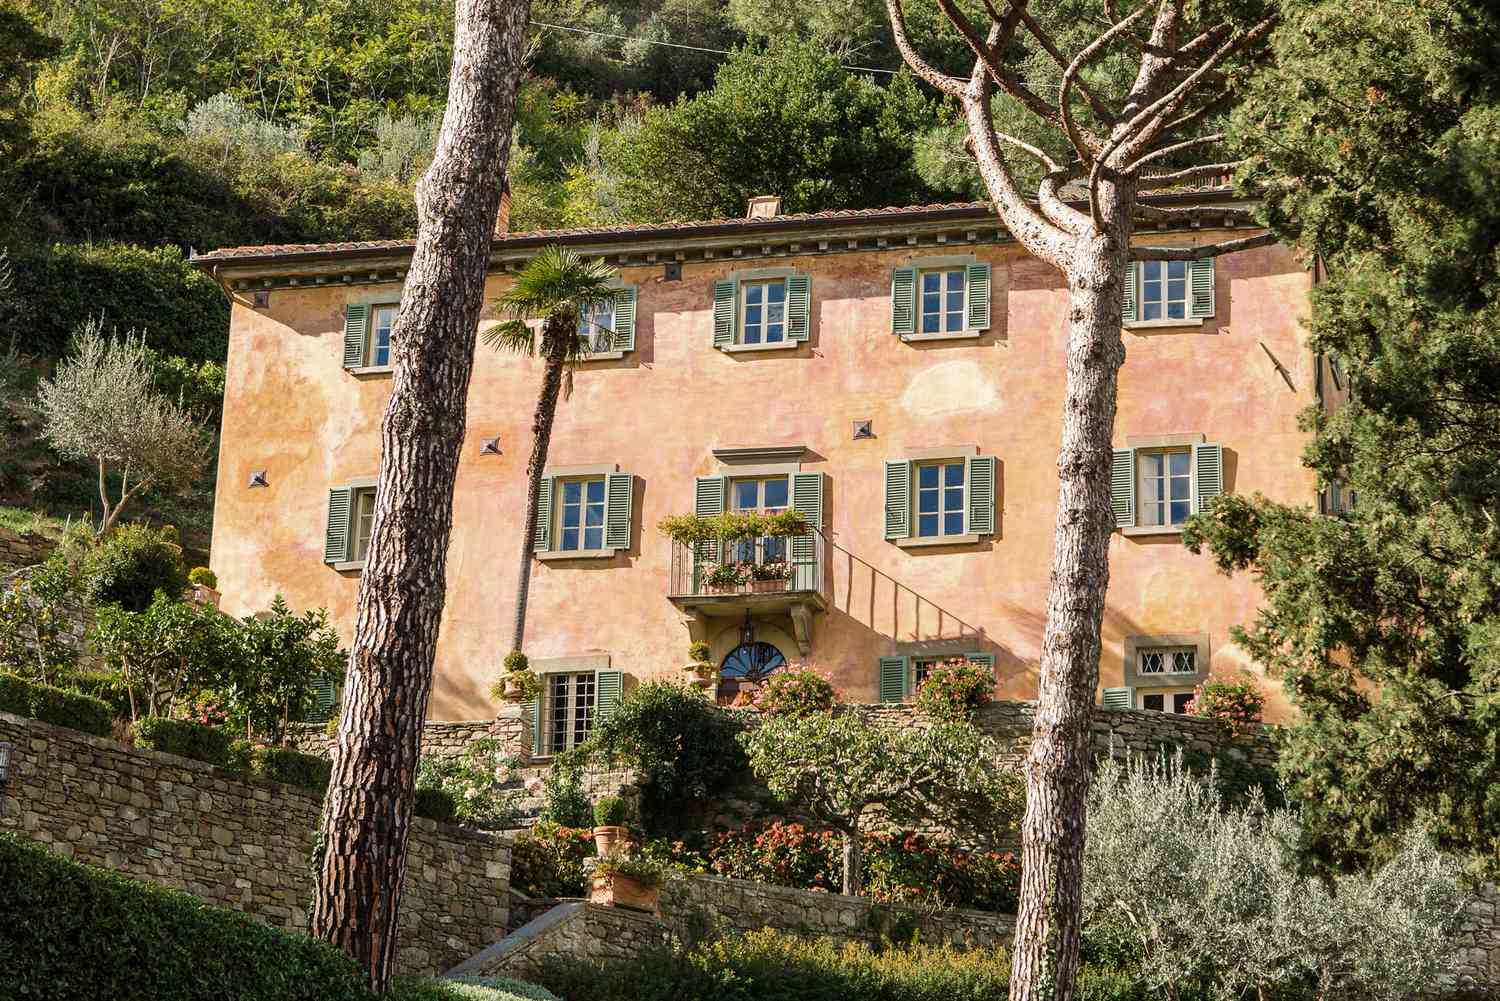 Casa francesa em estilo campestre com paredes de terracota cercadas por árvores e arbustos